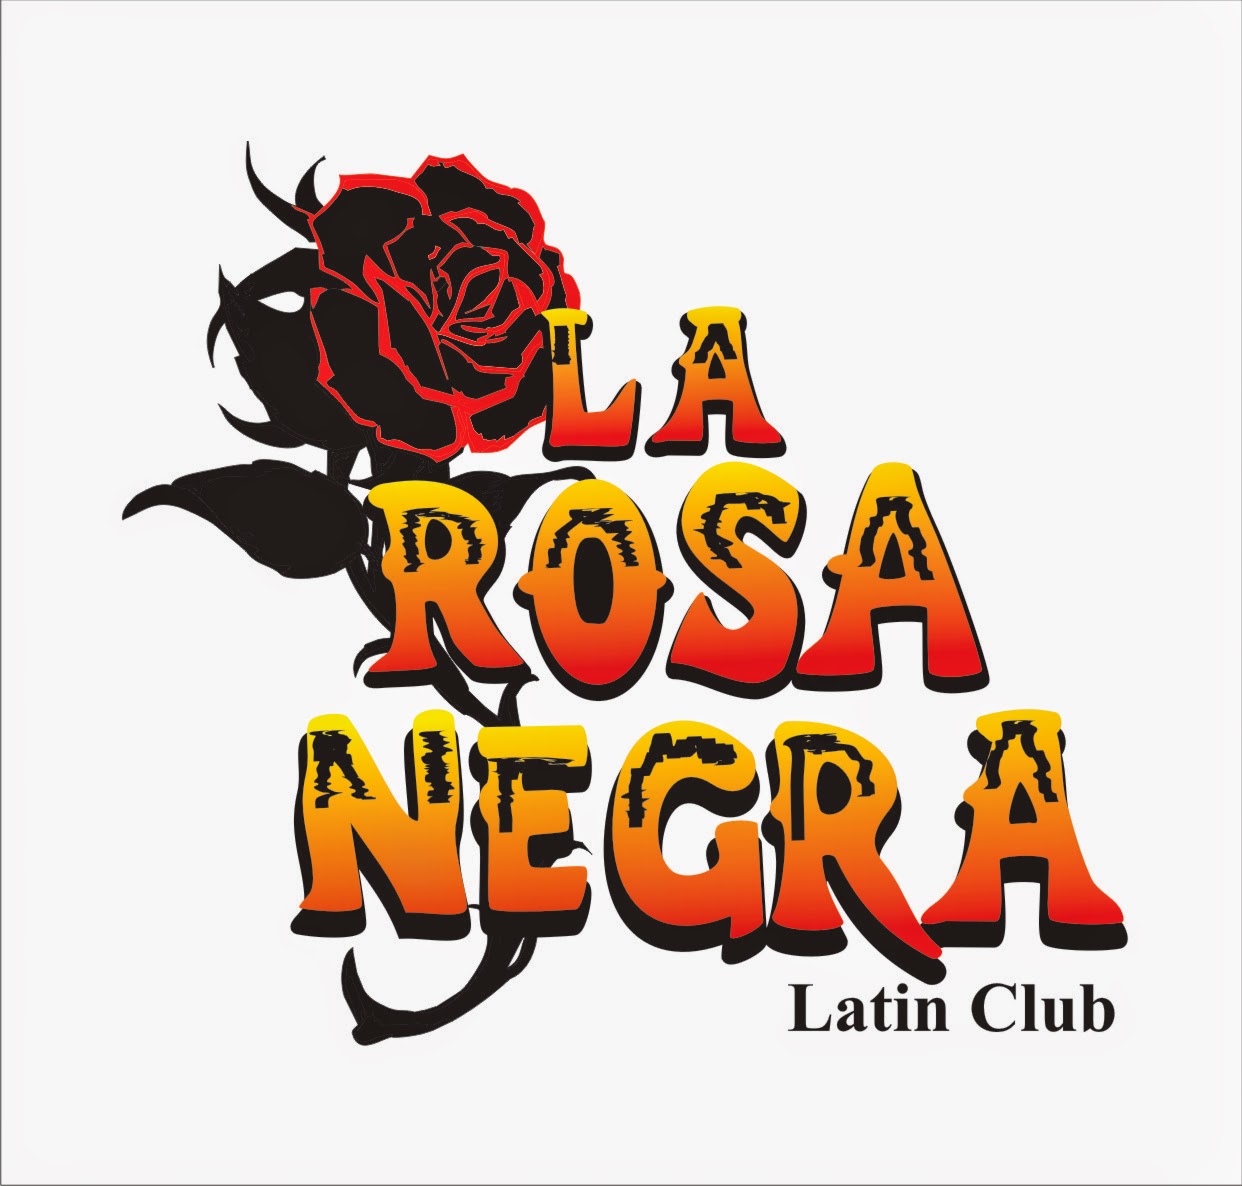 https://www.facebook.com/pages/La-Rosa-Negra-Latin-Club/